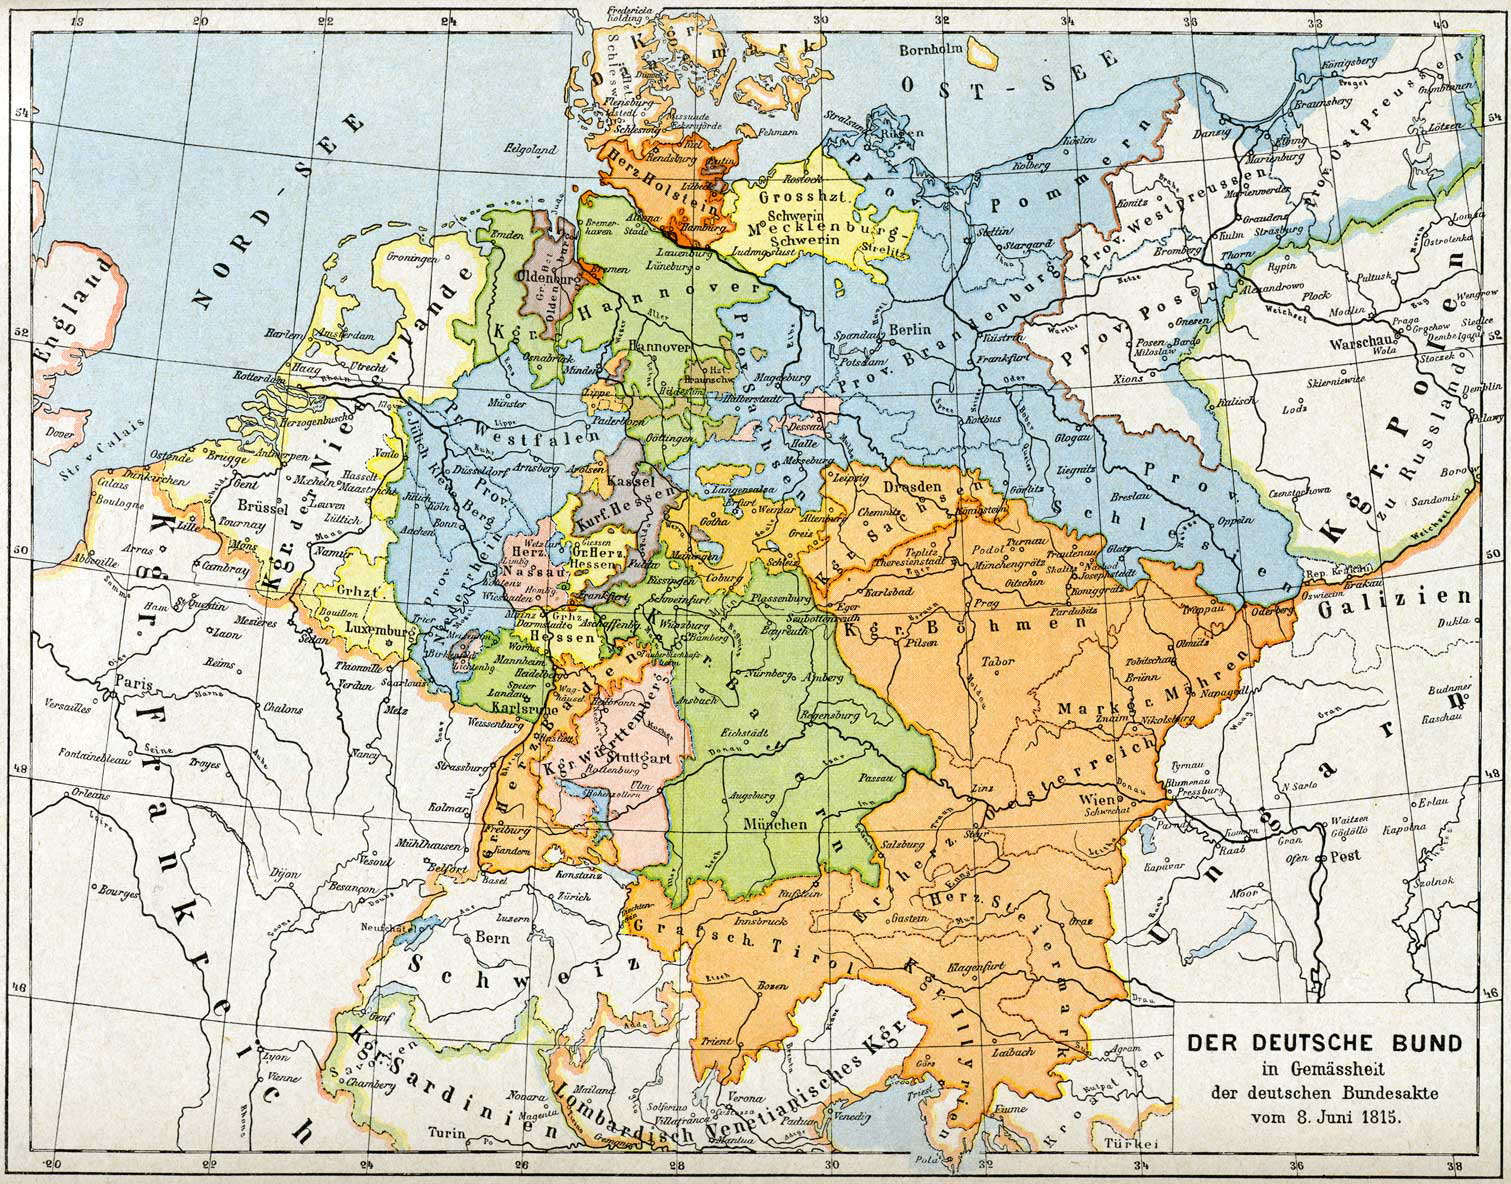 Deutscher Bund, 1815